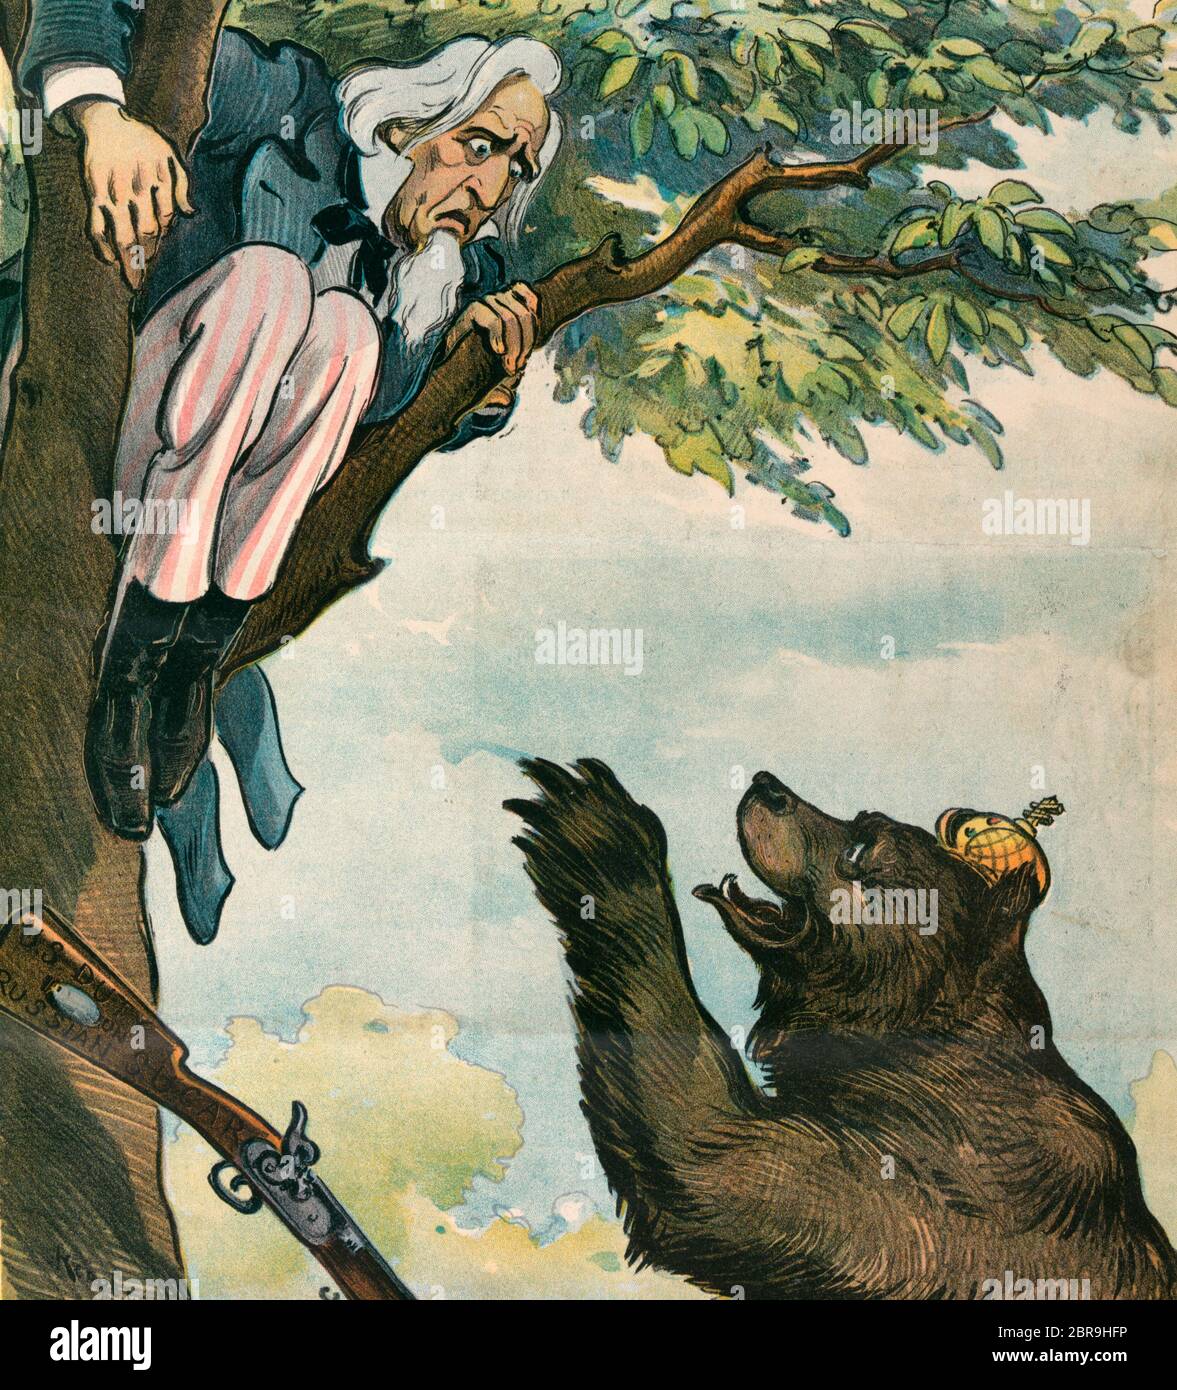 Comme la guerre tarifaire doit se terminer - l'illustration montre l'oncle Sam dans un arbre, chassé là par l'ours russe qui se tient à la base de l'arbre; l'oncle Sam a laissé tomber son fusil étiqueté 'U.S. Le droit sur le sucre russe.' Caricature politique, 1901 Banque D'Images